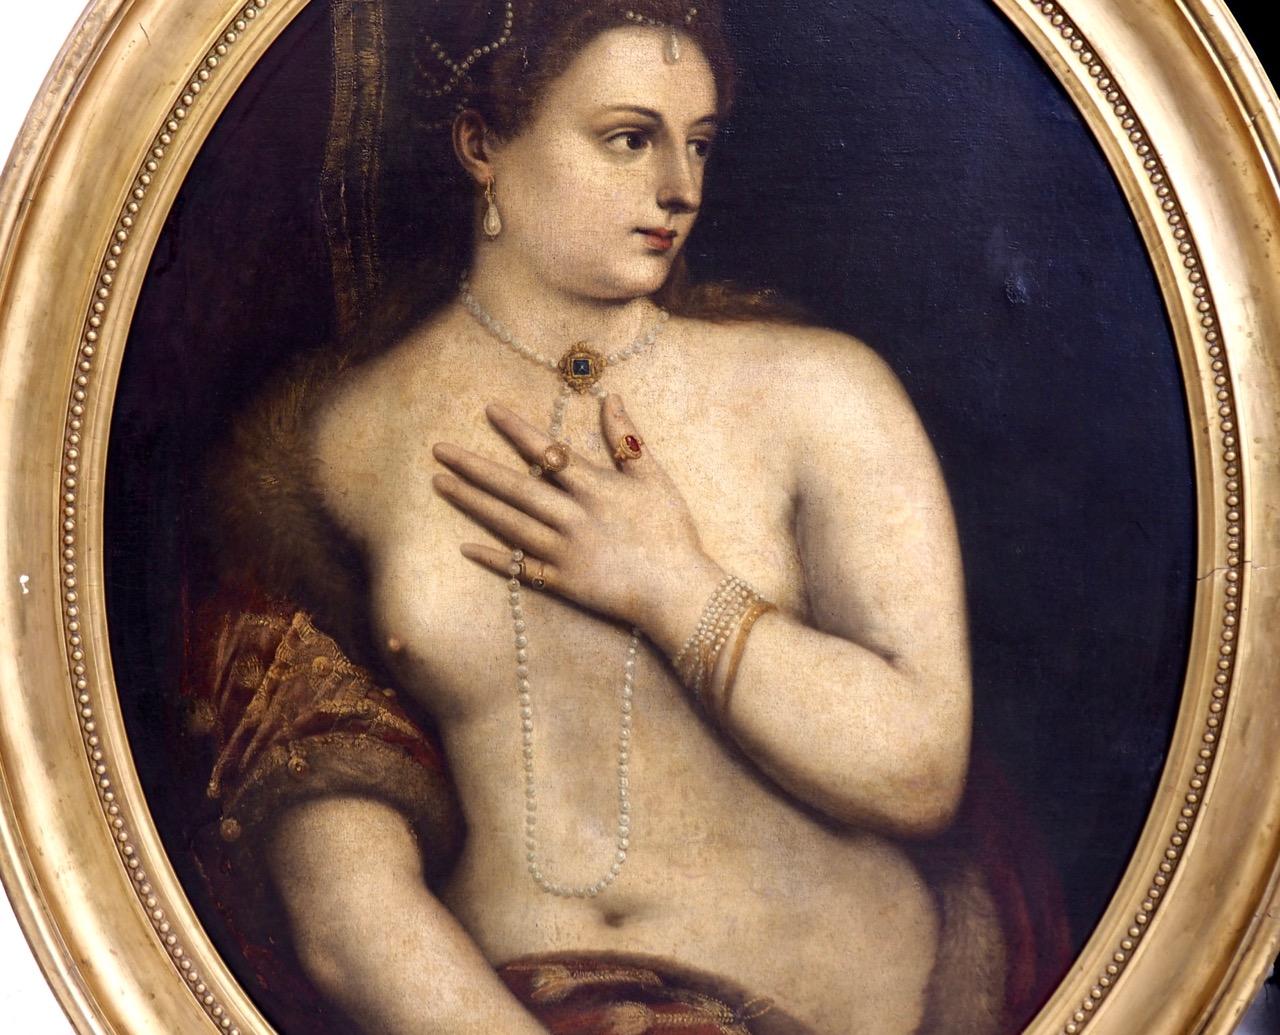 Fantastique tableau de maître ancien représentant une femme nue avec des perles, probablement italien, vers 1680 - 1710.
Mesures : H. 90 L. 74 cm
H. 35.4 W. 29.1 in.